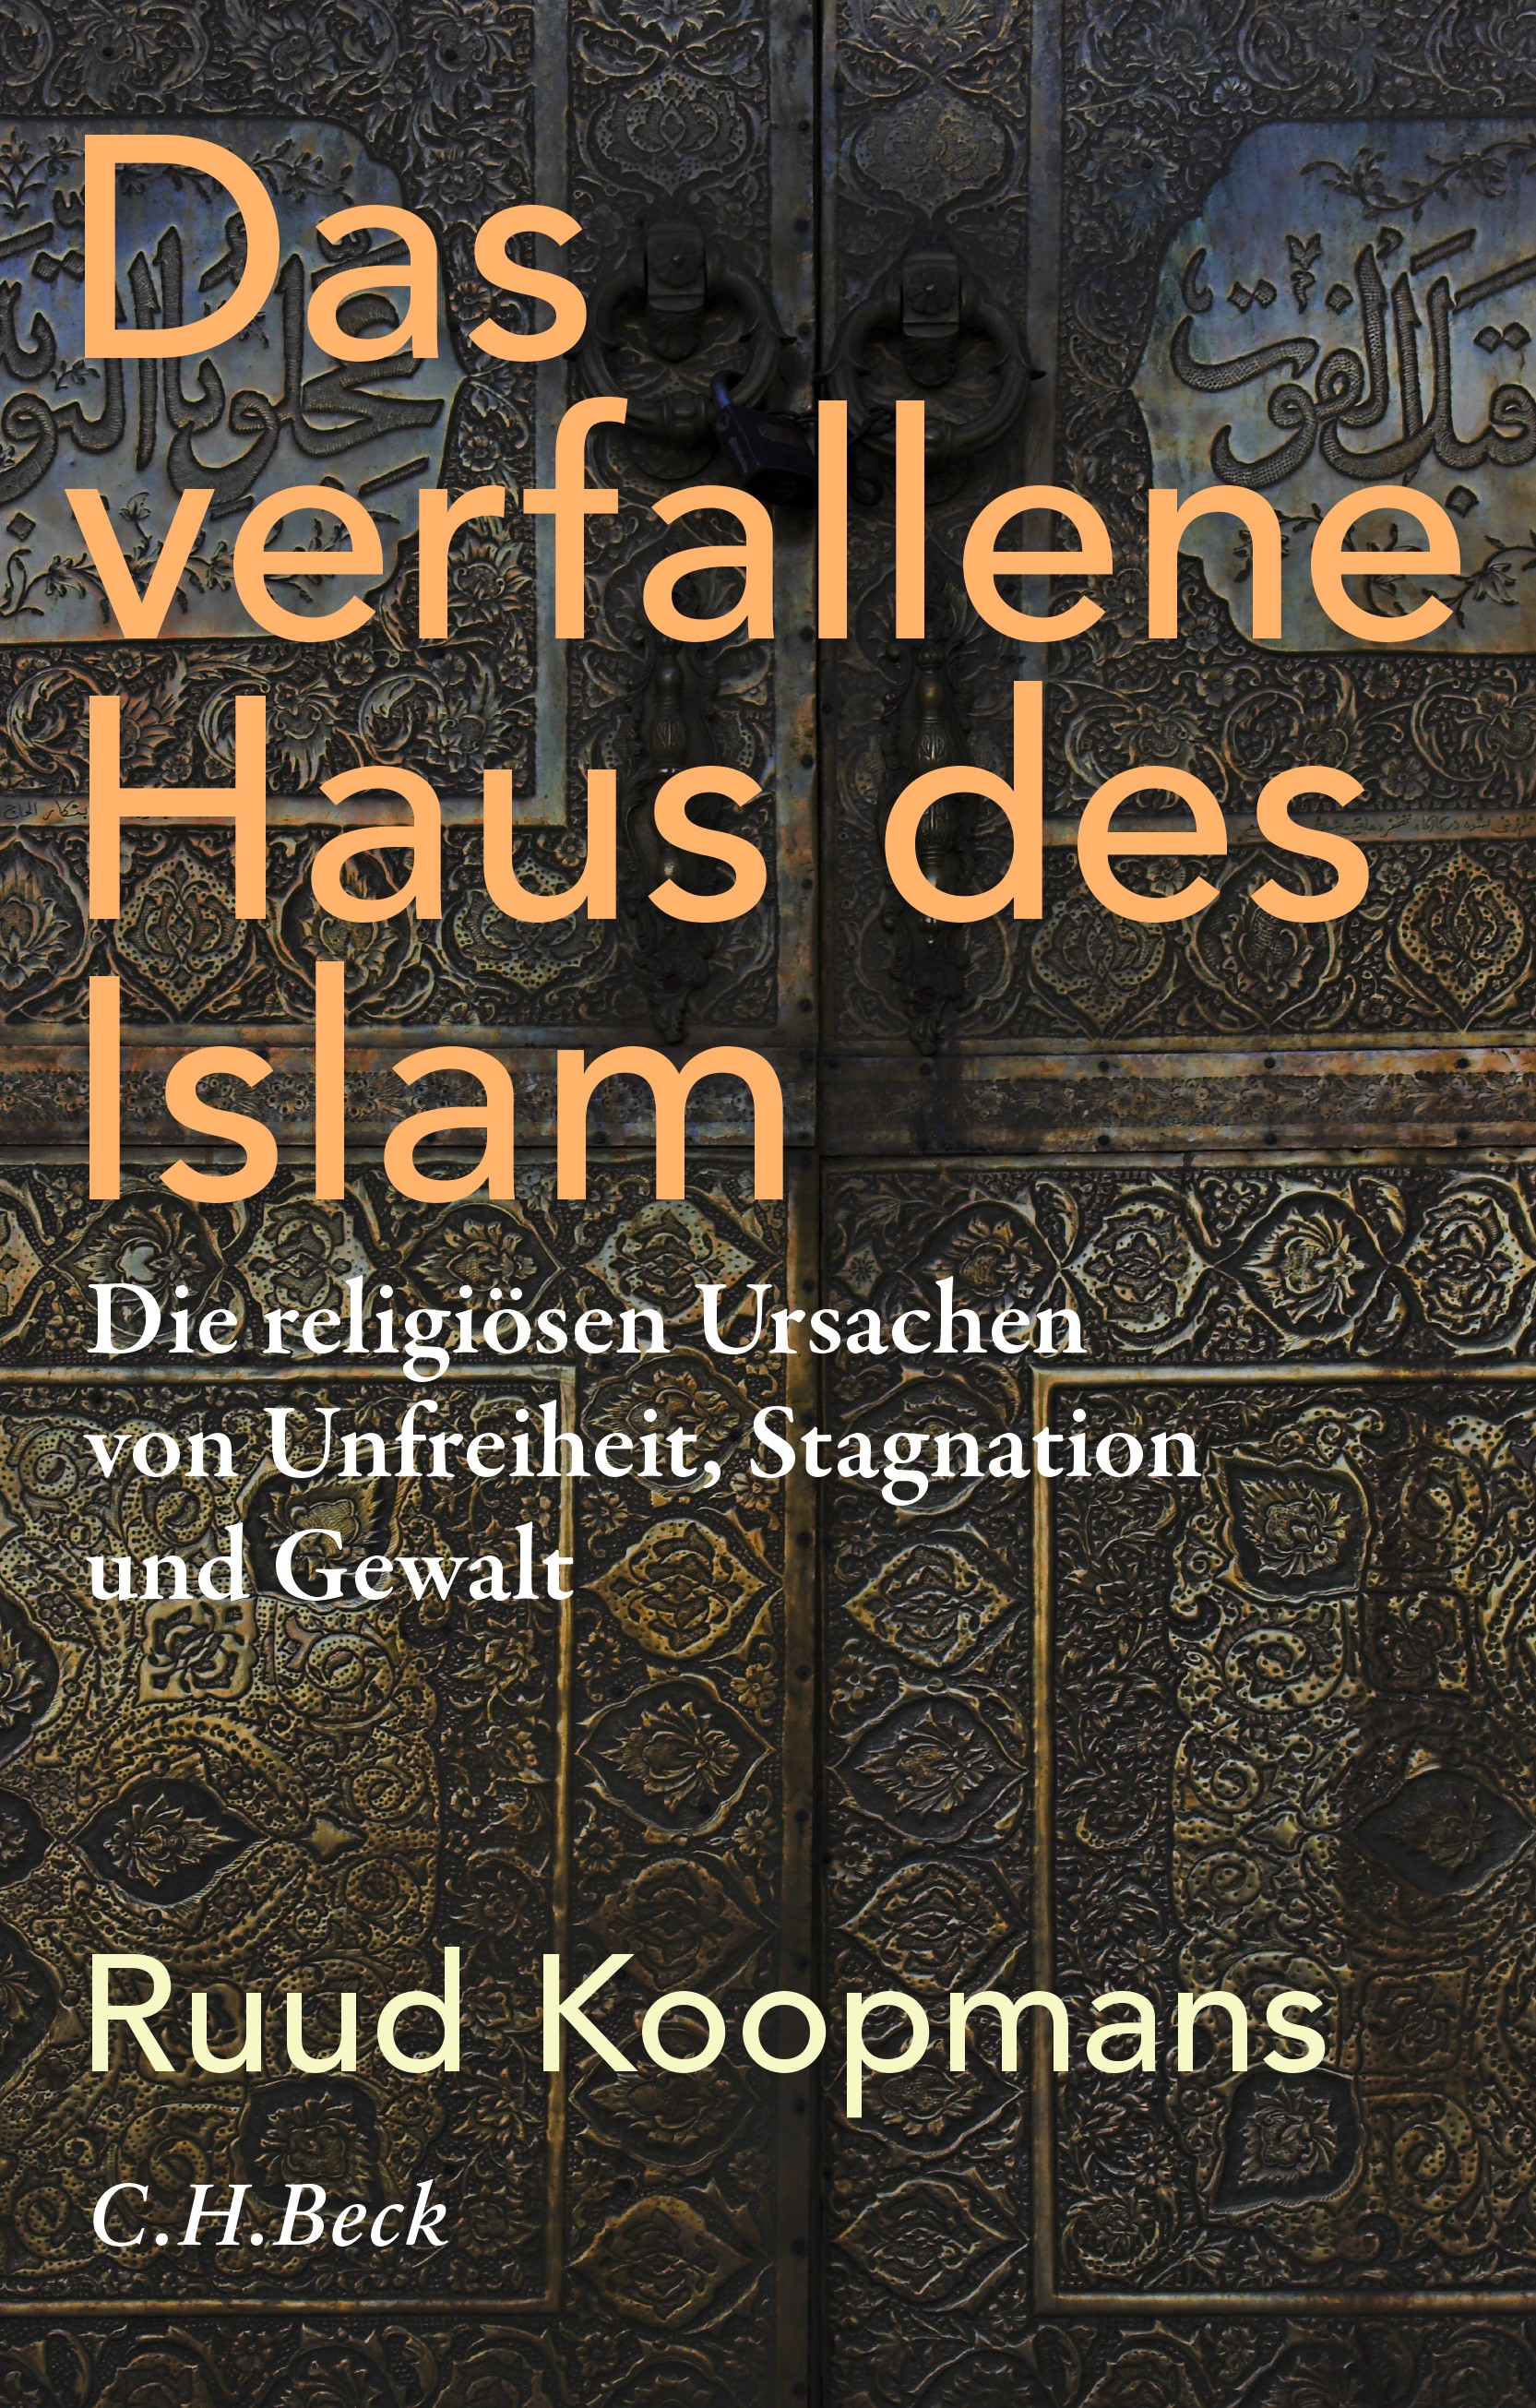 الغلاف الألماني لكتاب "دار الإسلام المتهاوية" للباحث الاجتماعي الهولندي الألماني رود كوبمانس. (published by C. H. Beck)